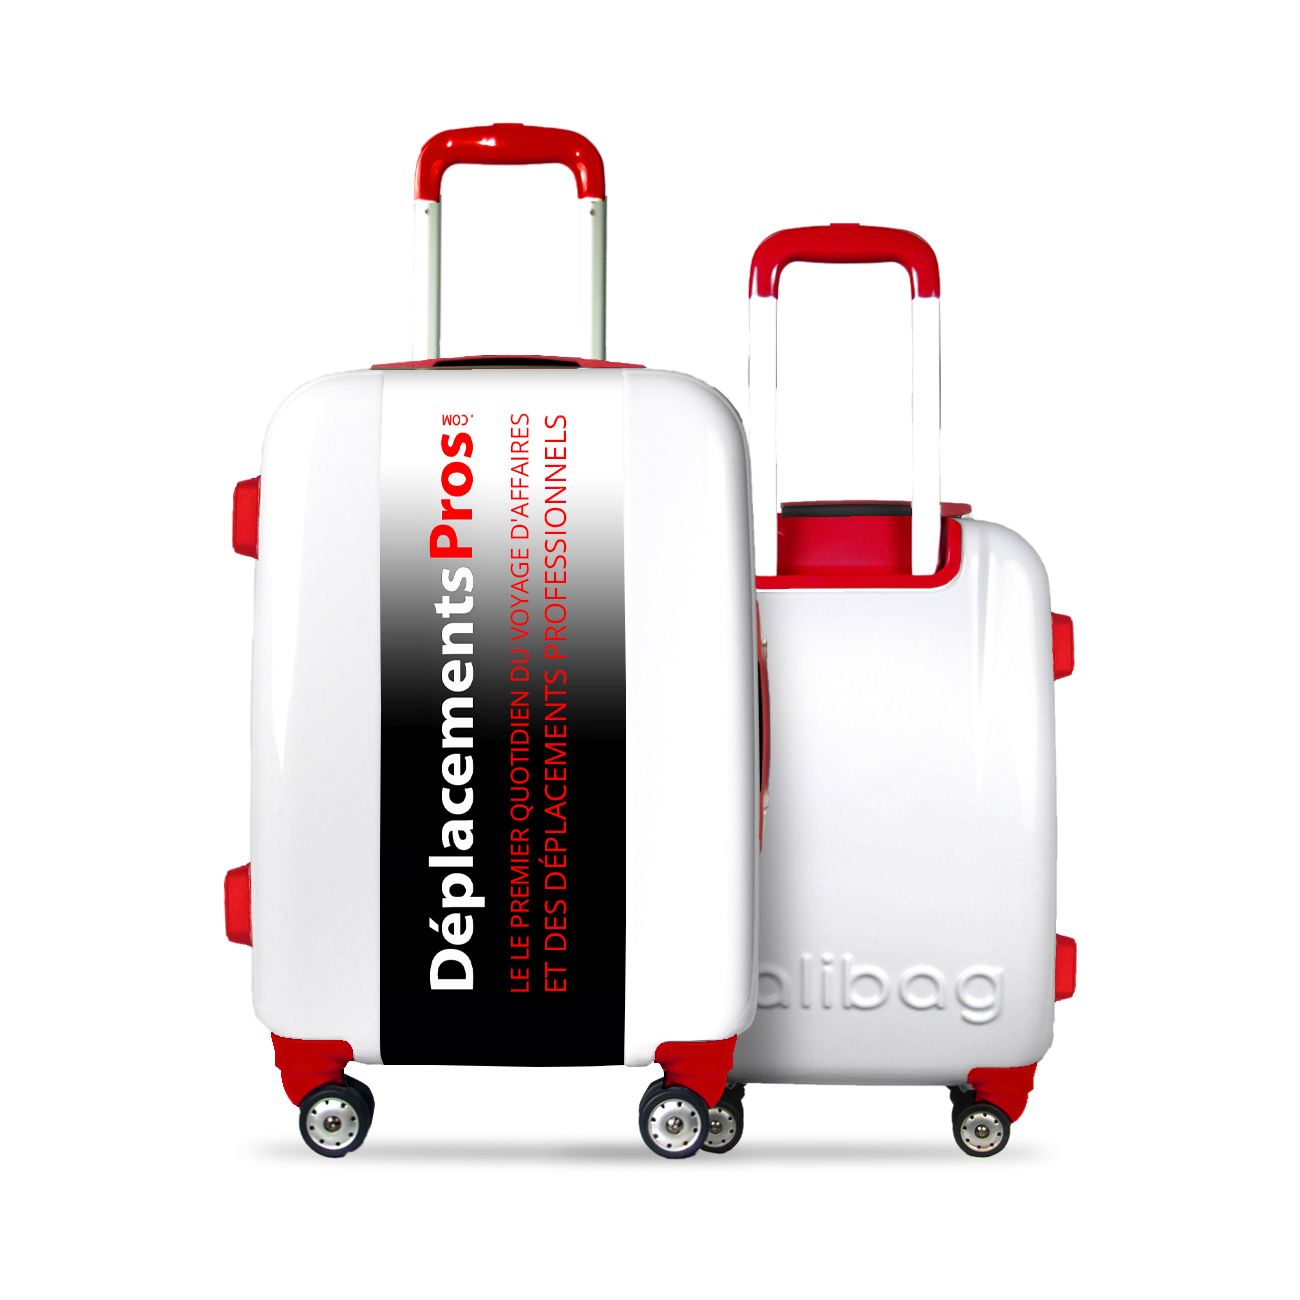 Offrez une valise personnalisée à vos voyageurs d’affaires